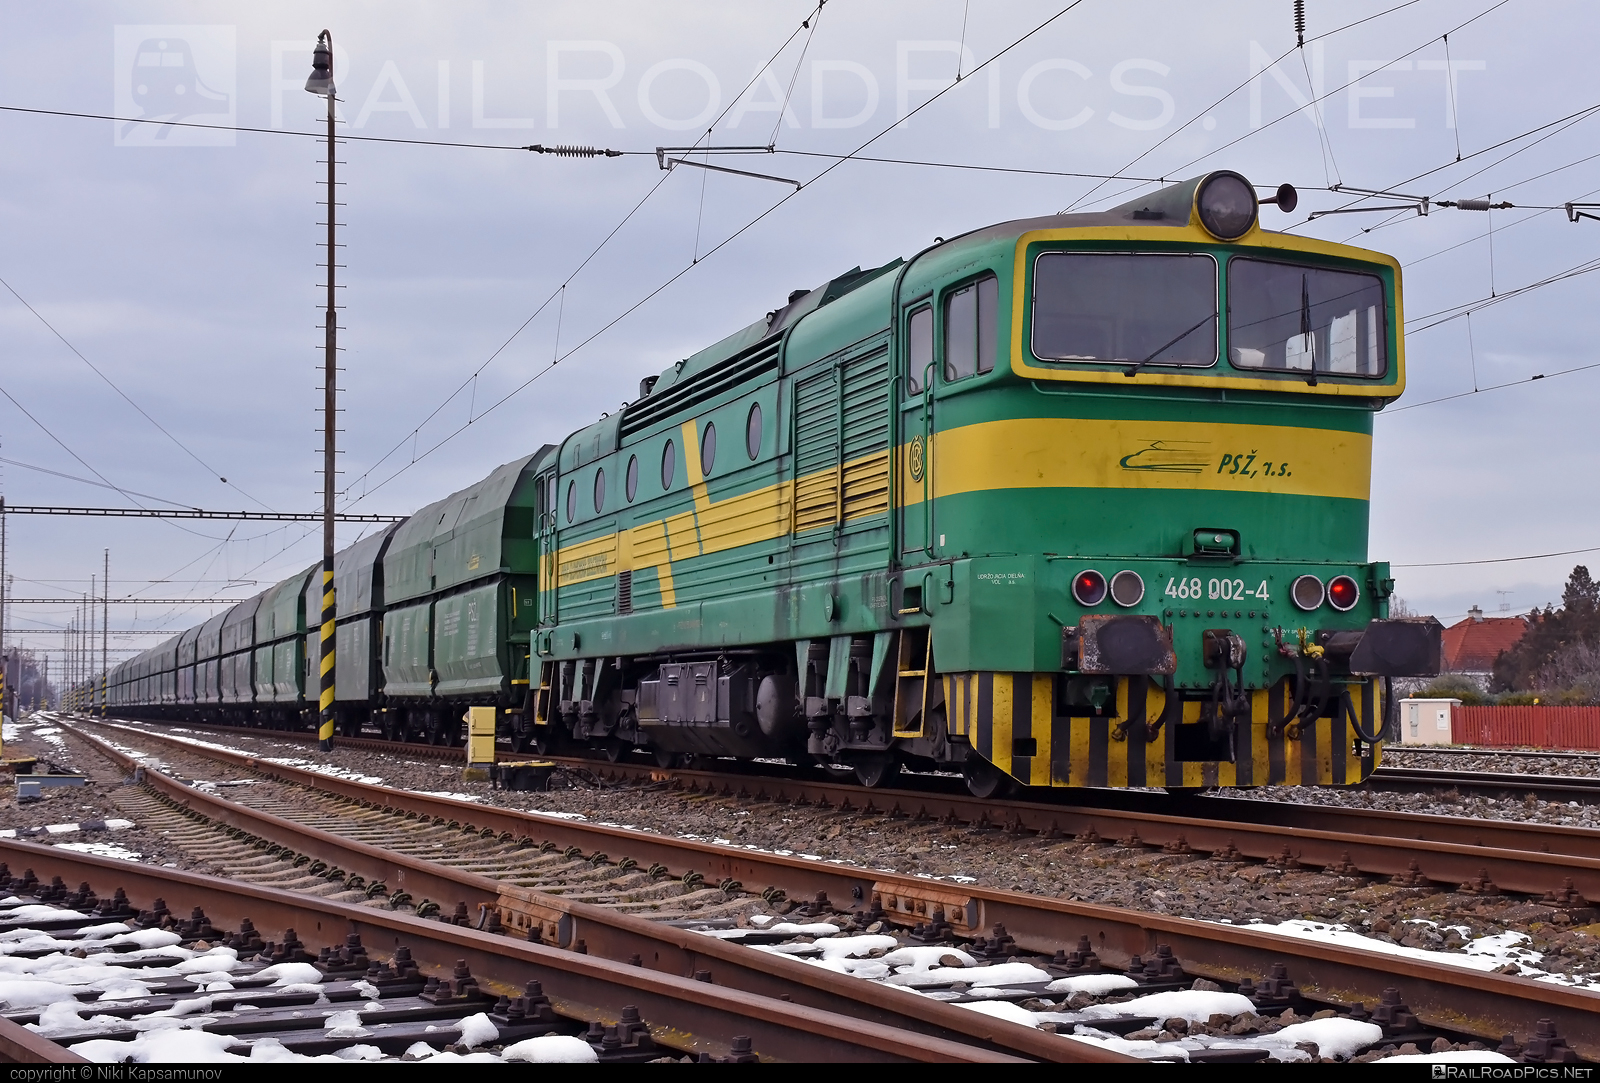 ČKD T 478.3 (753) - 468 002-4 operated by Prvá Slovenská železničná, a.s. #brejlovec #ckd #ckdclass753 #ckdt4783 #hopperwagon #locomotive753 #okuliarnik #prvaslovenskazeleznicna #prvaslovenskazeleznicnaas #psz